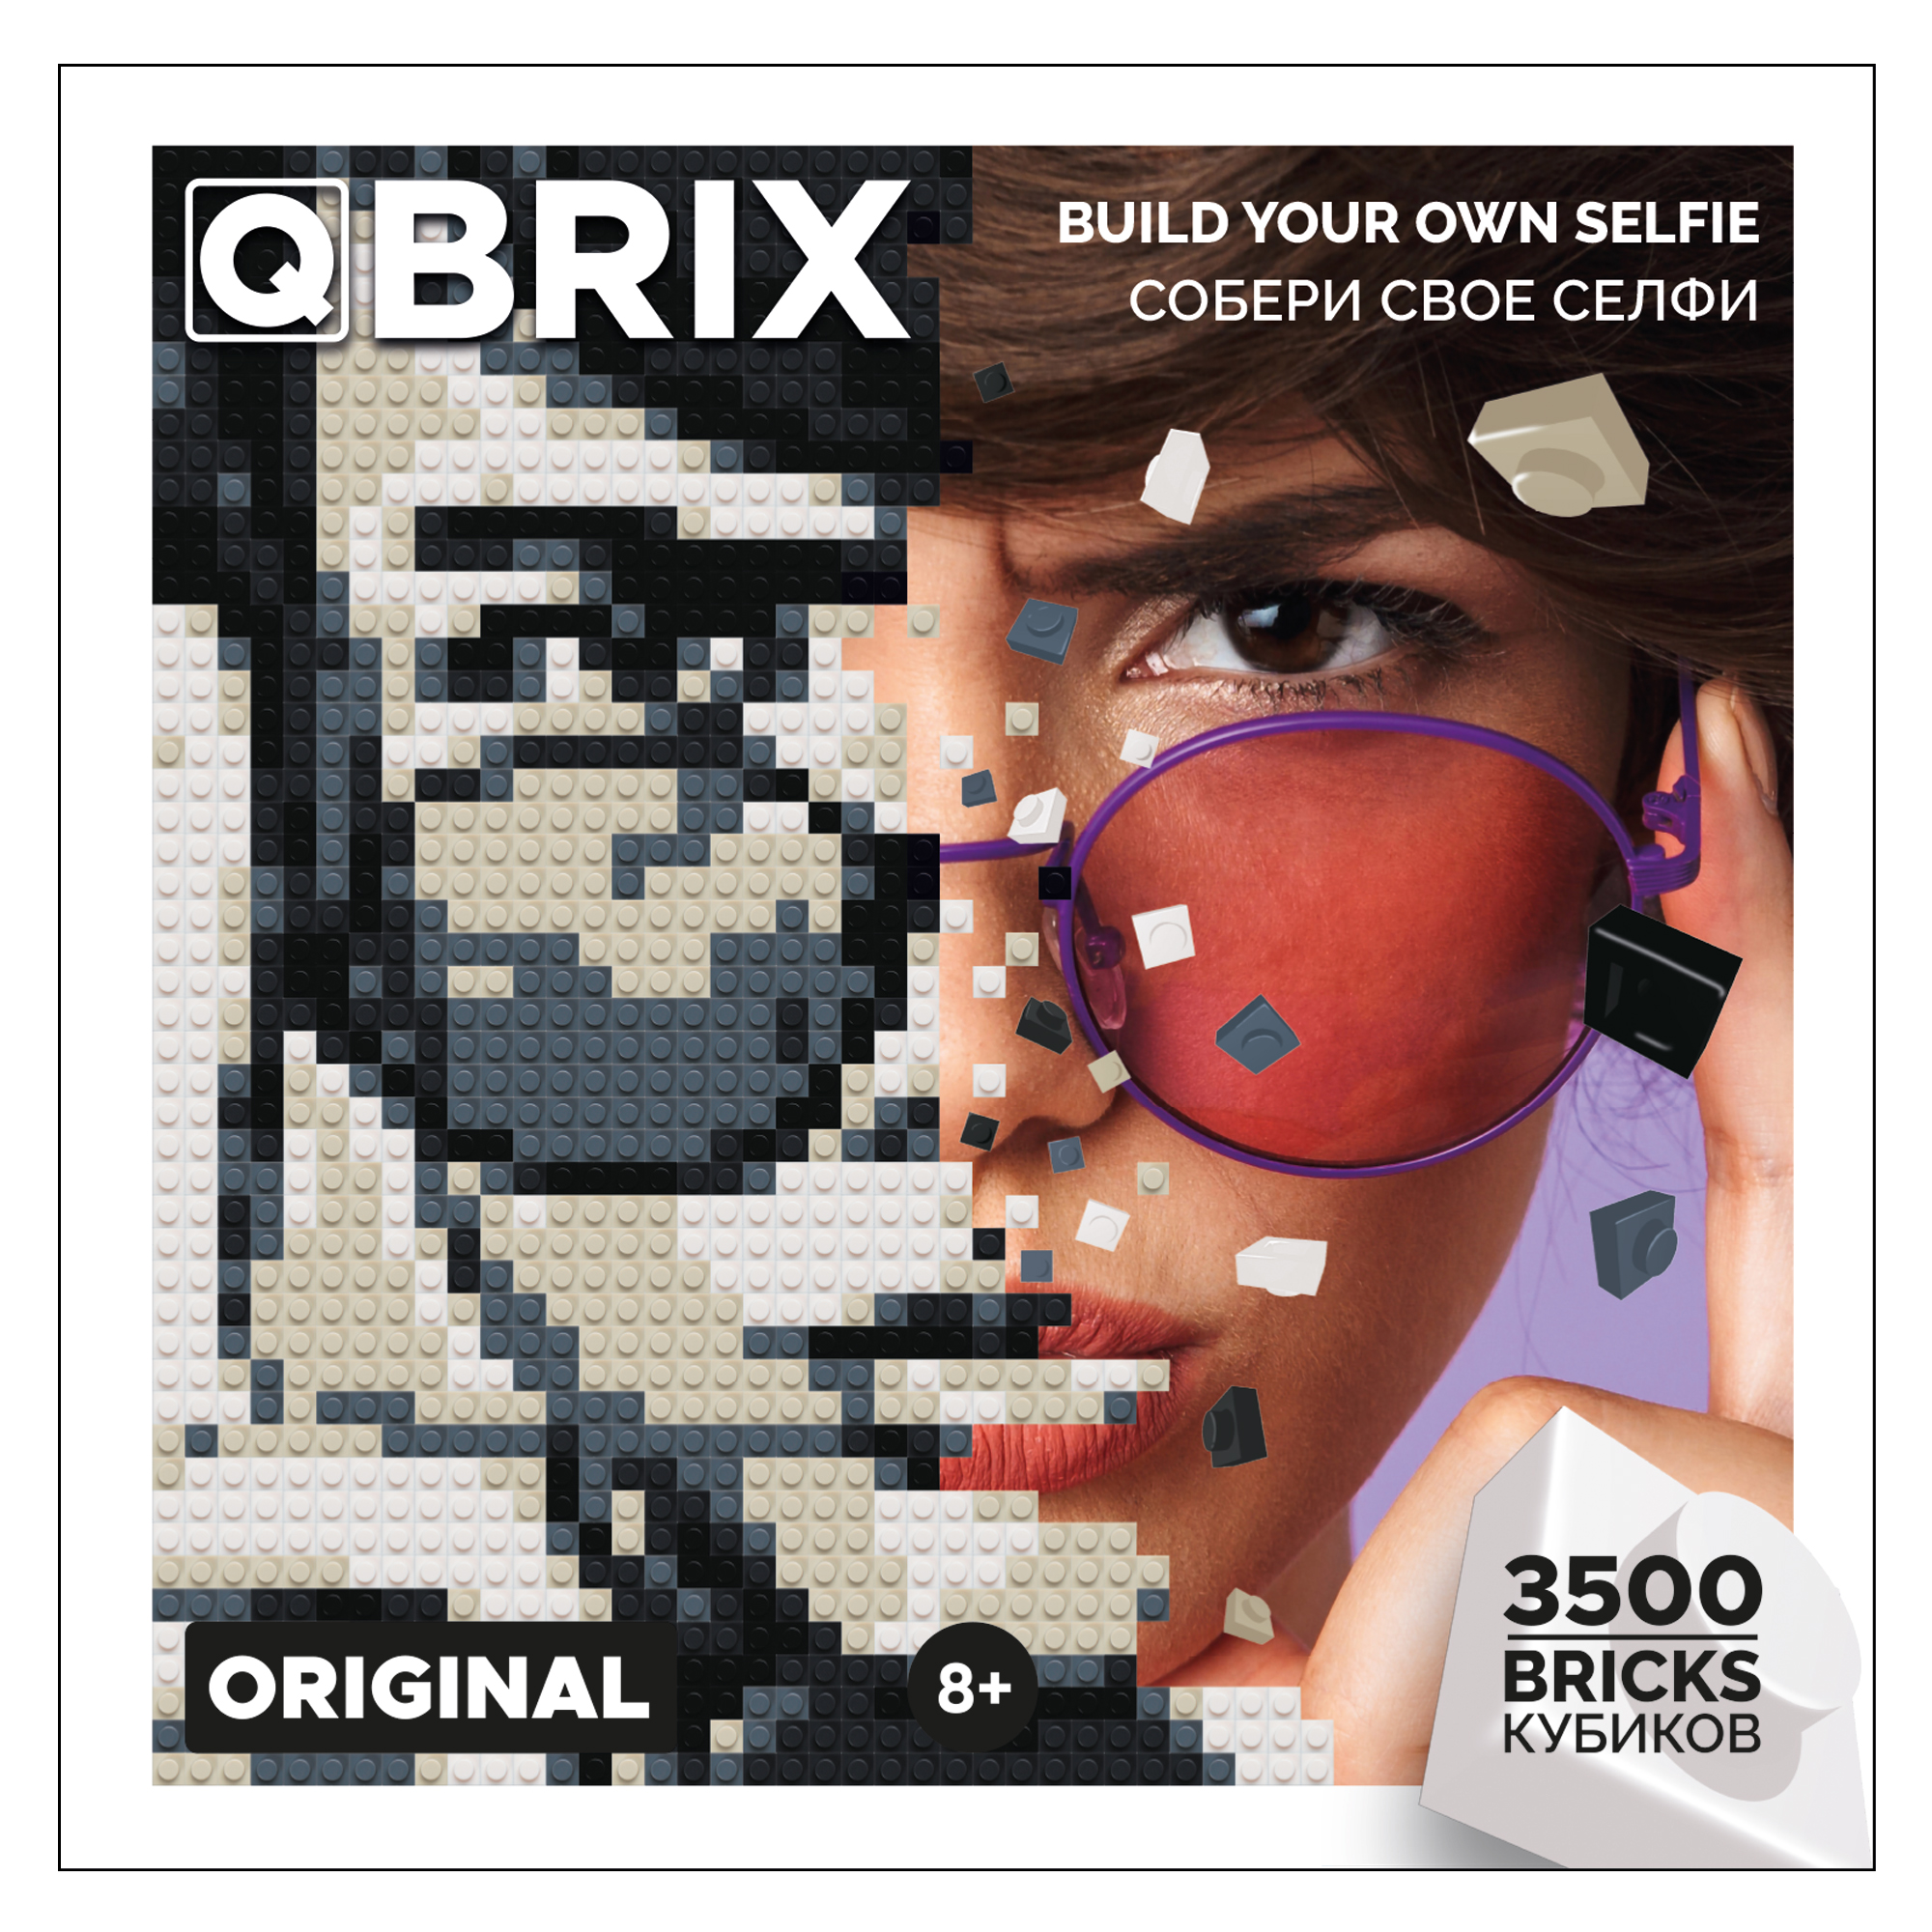 Фото-конструктор Qbrix Original 50001 - фото 9